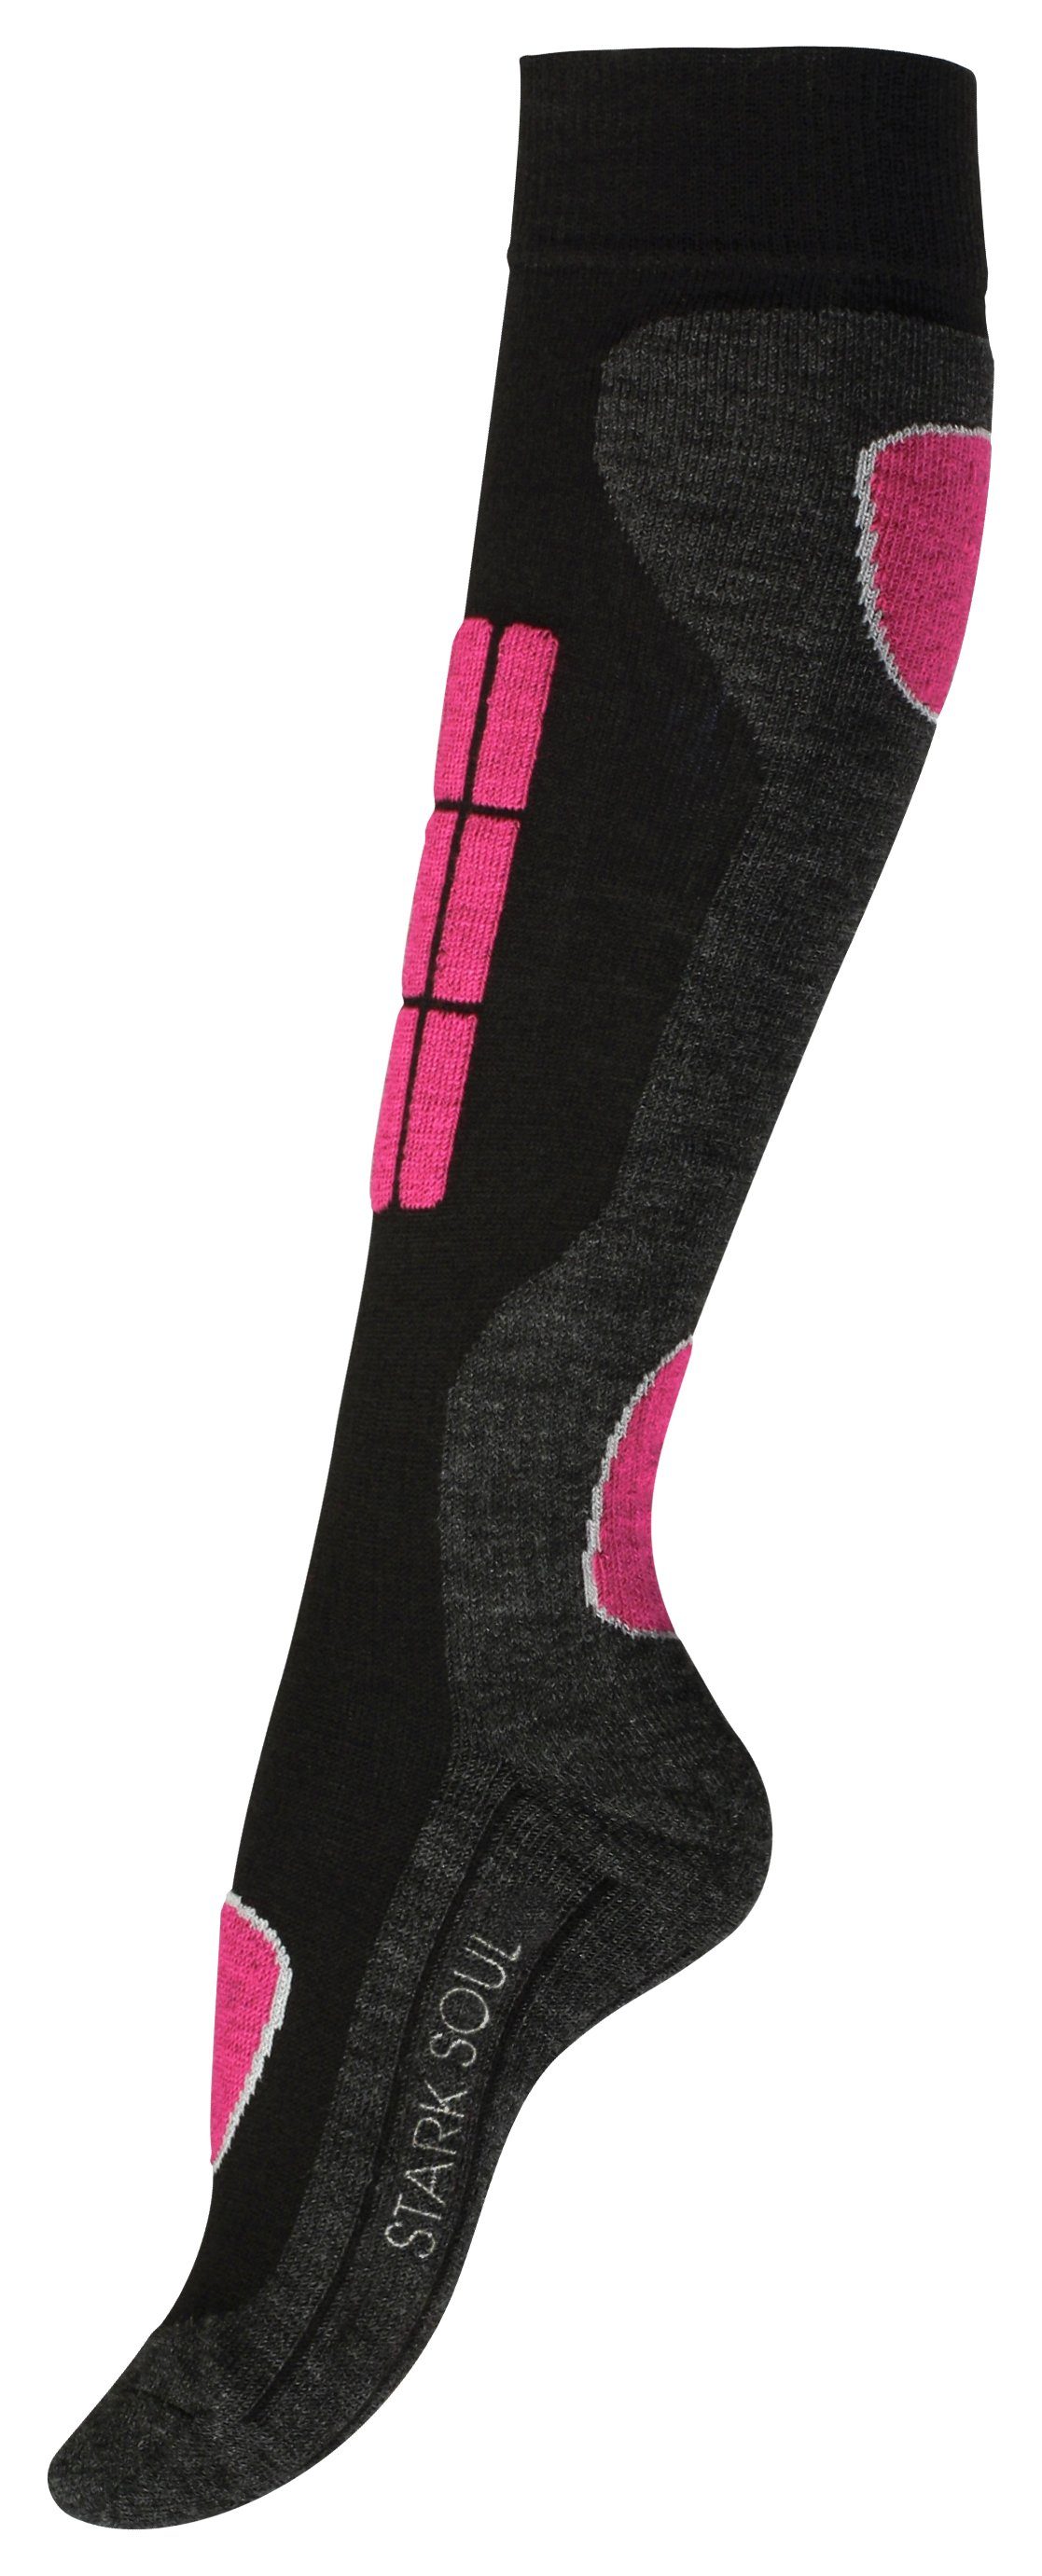 Stark Soul® Skisocken an Spezial flache Pink/Turquoise Knöchel und Spezialpolsterung, dickes Socken Proteegewebe Nähte, Snowboard mit Belastungszonen, den 2 an Paar & -Polsterungen Wintersport 2er-Pack, Socken, Ski Spann, Dehnungszonen